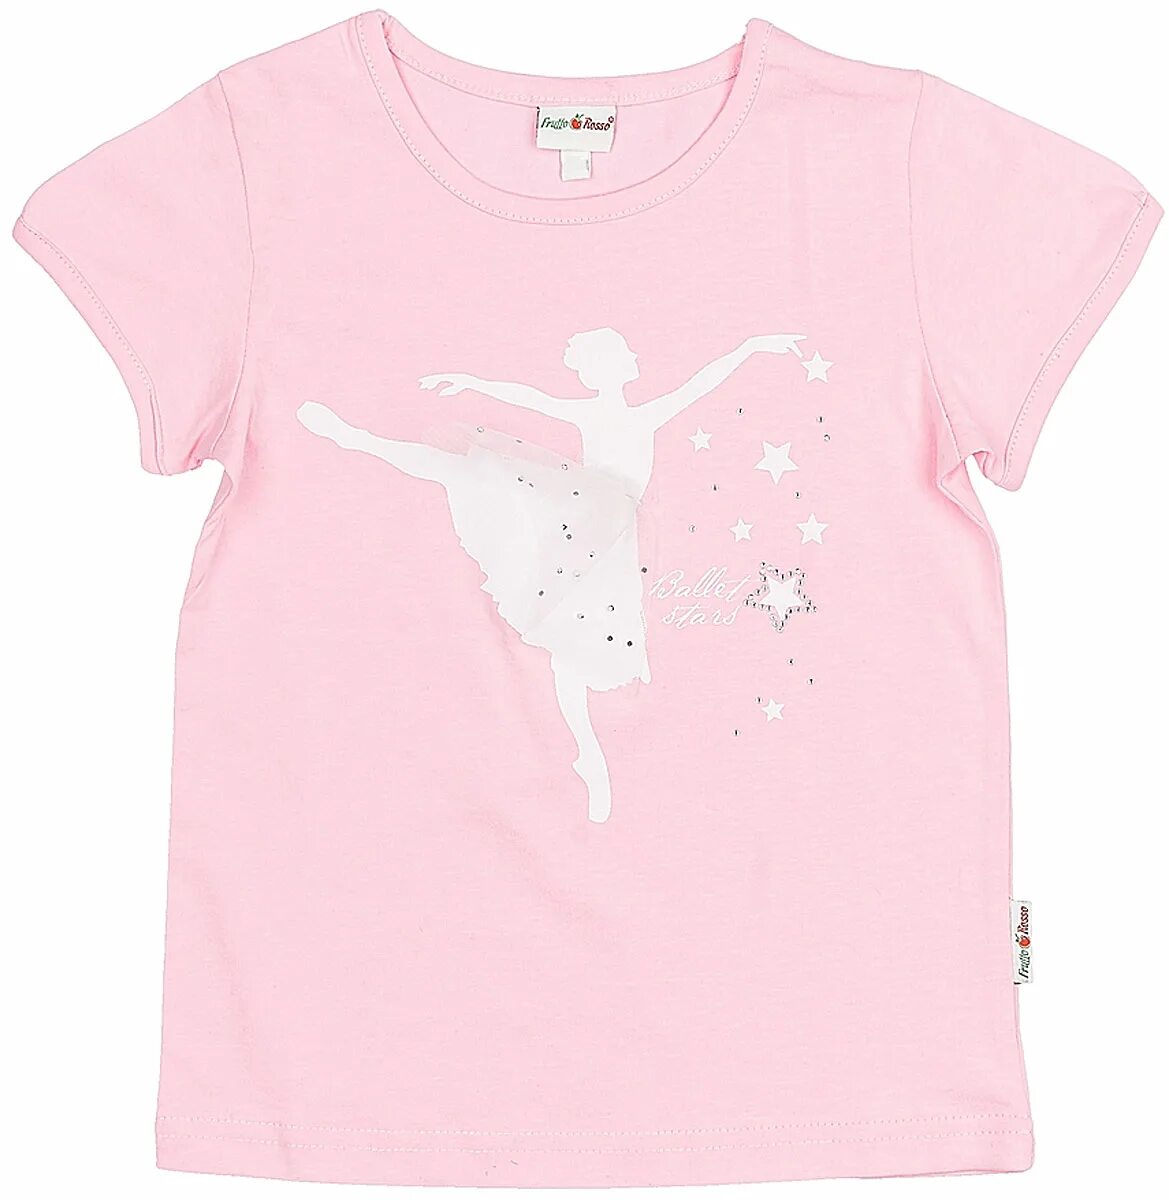 Розовая футболка для девочки. Футболка для девочки розовая. Футболка детская для девочек. Светло розовая футболка. Светло розовая футболка детская.